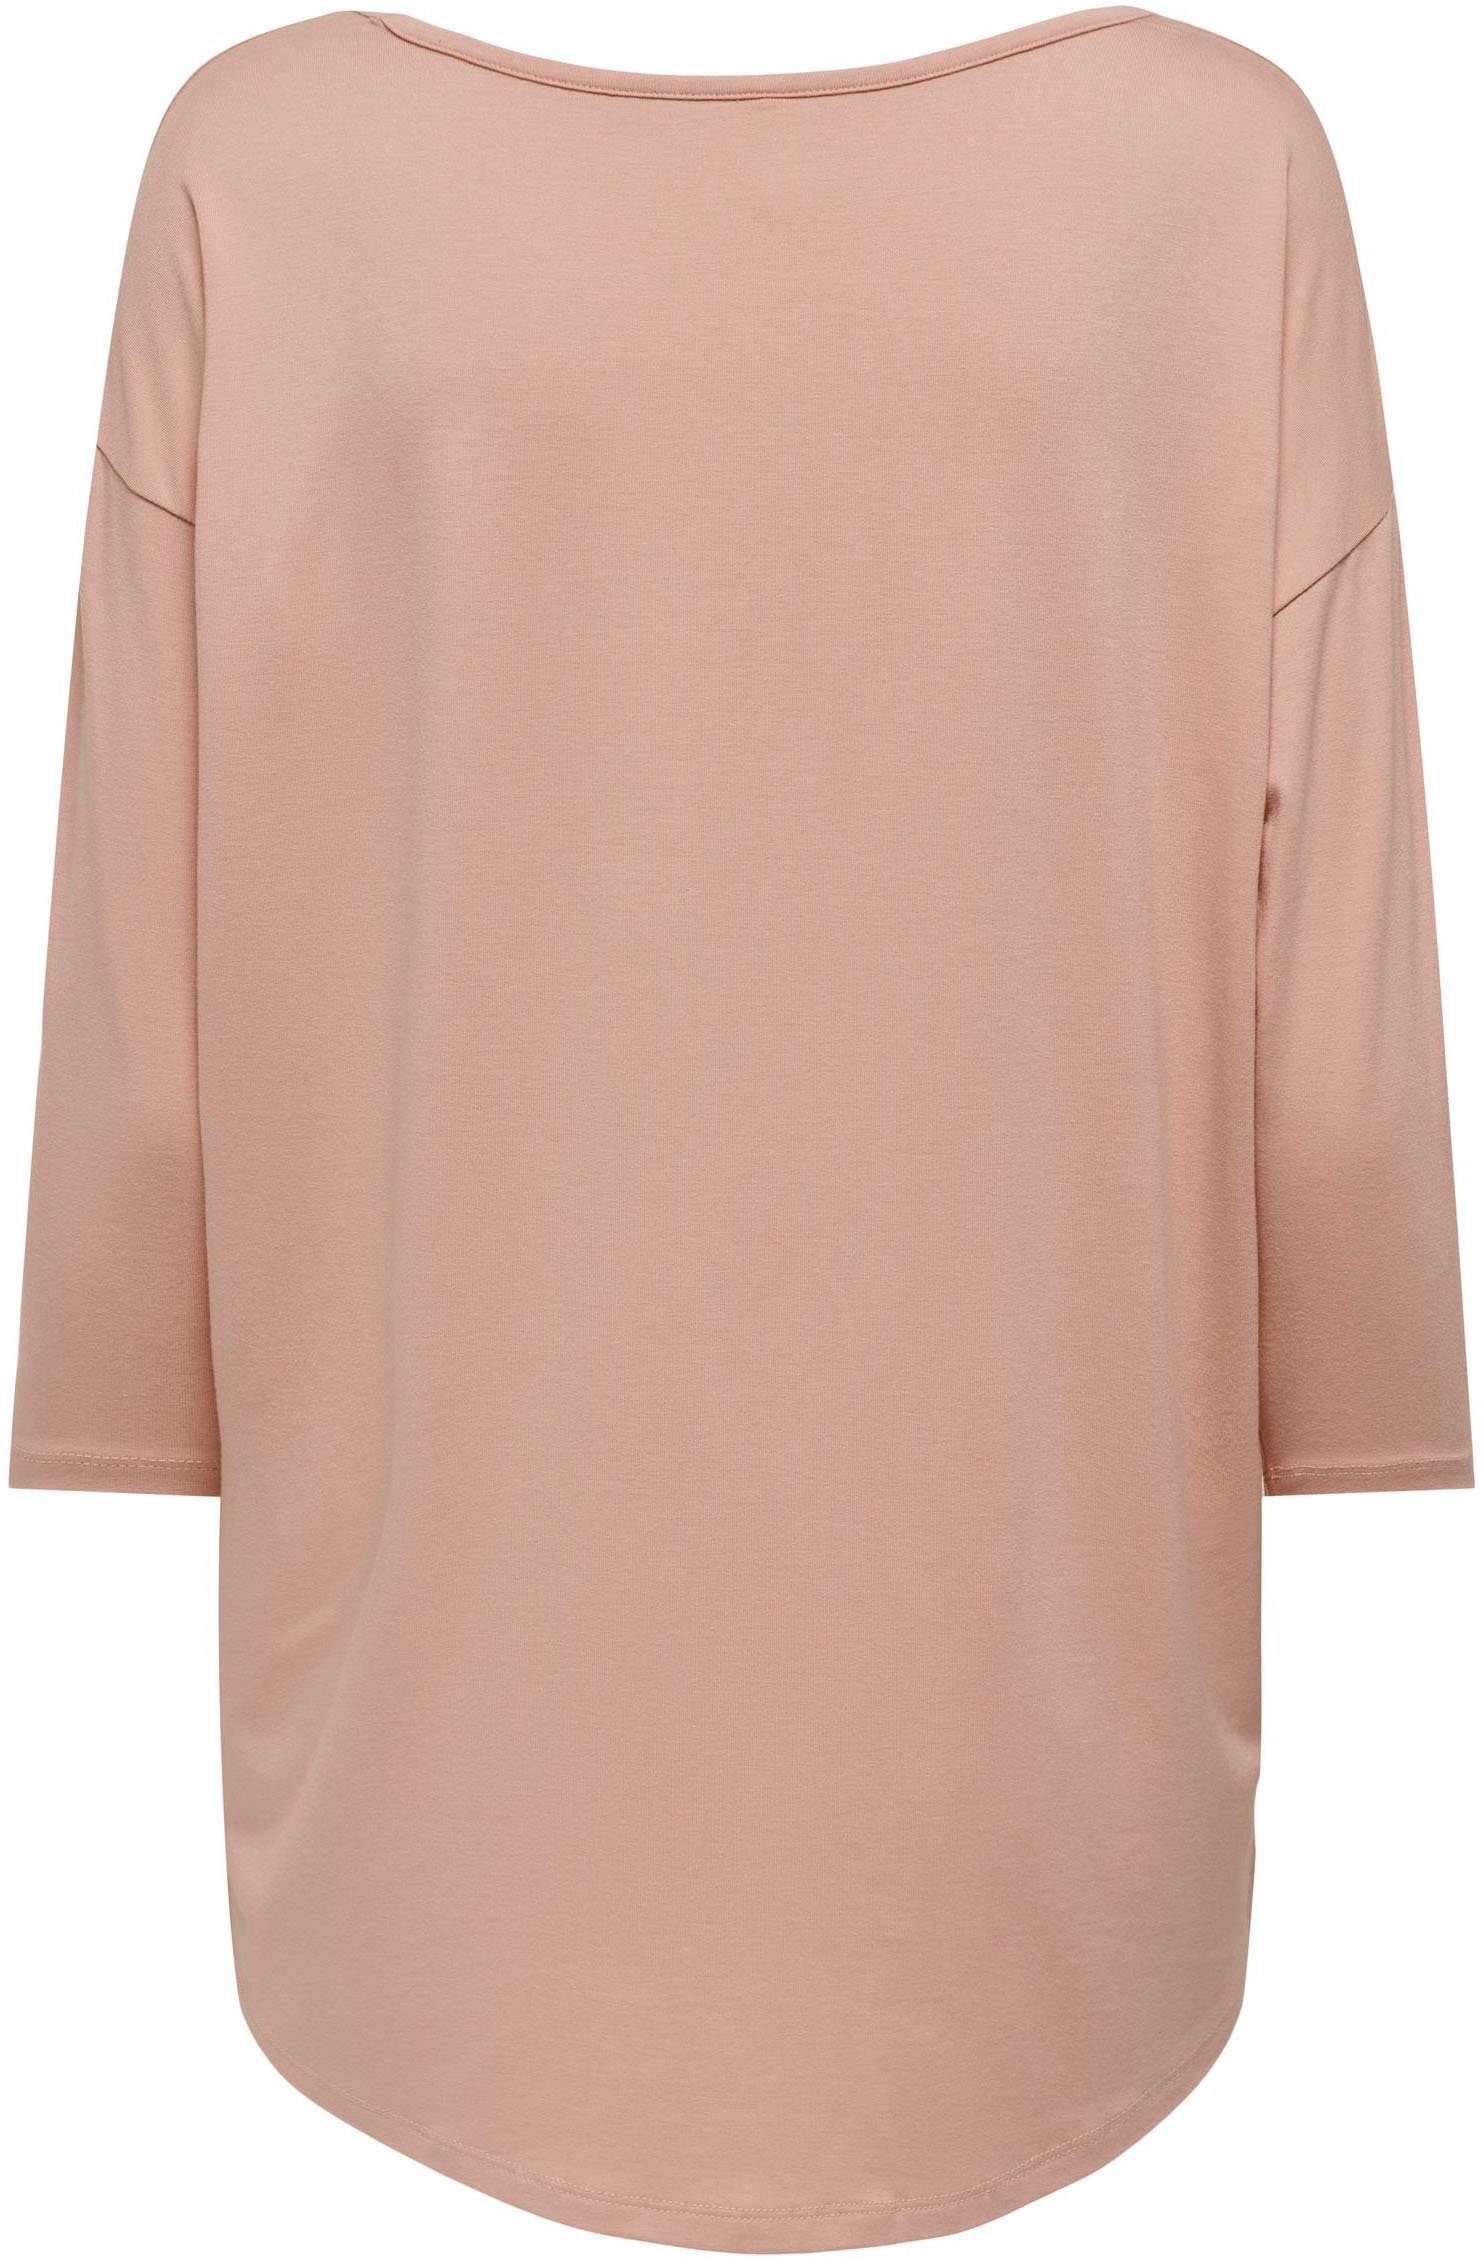 ONLY 3/4-Arm-Shirt Misty Detail:Melange 3/4 SHOULDER Rose TAPE ONLMOSTER CS TOP